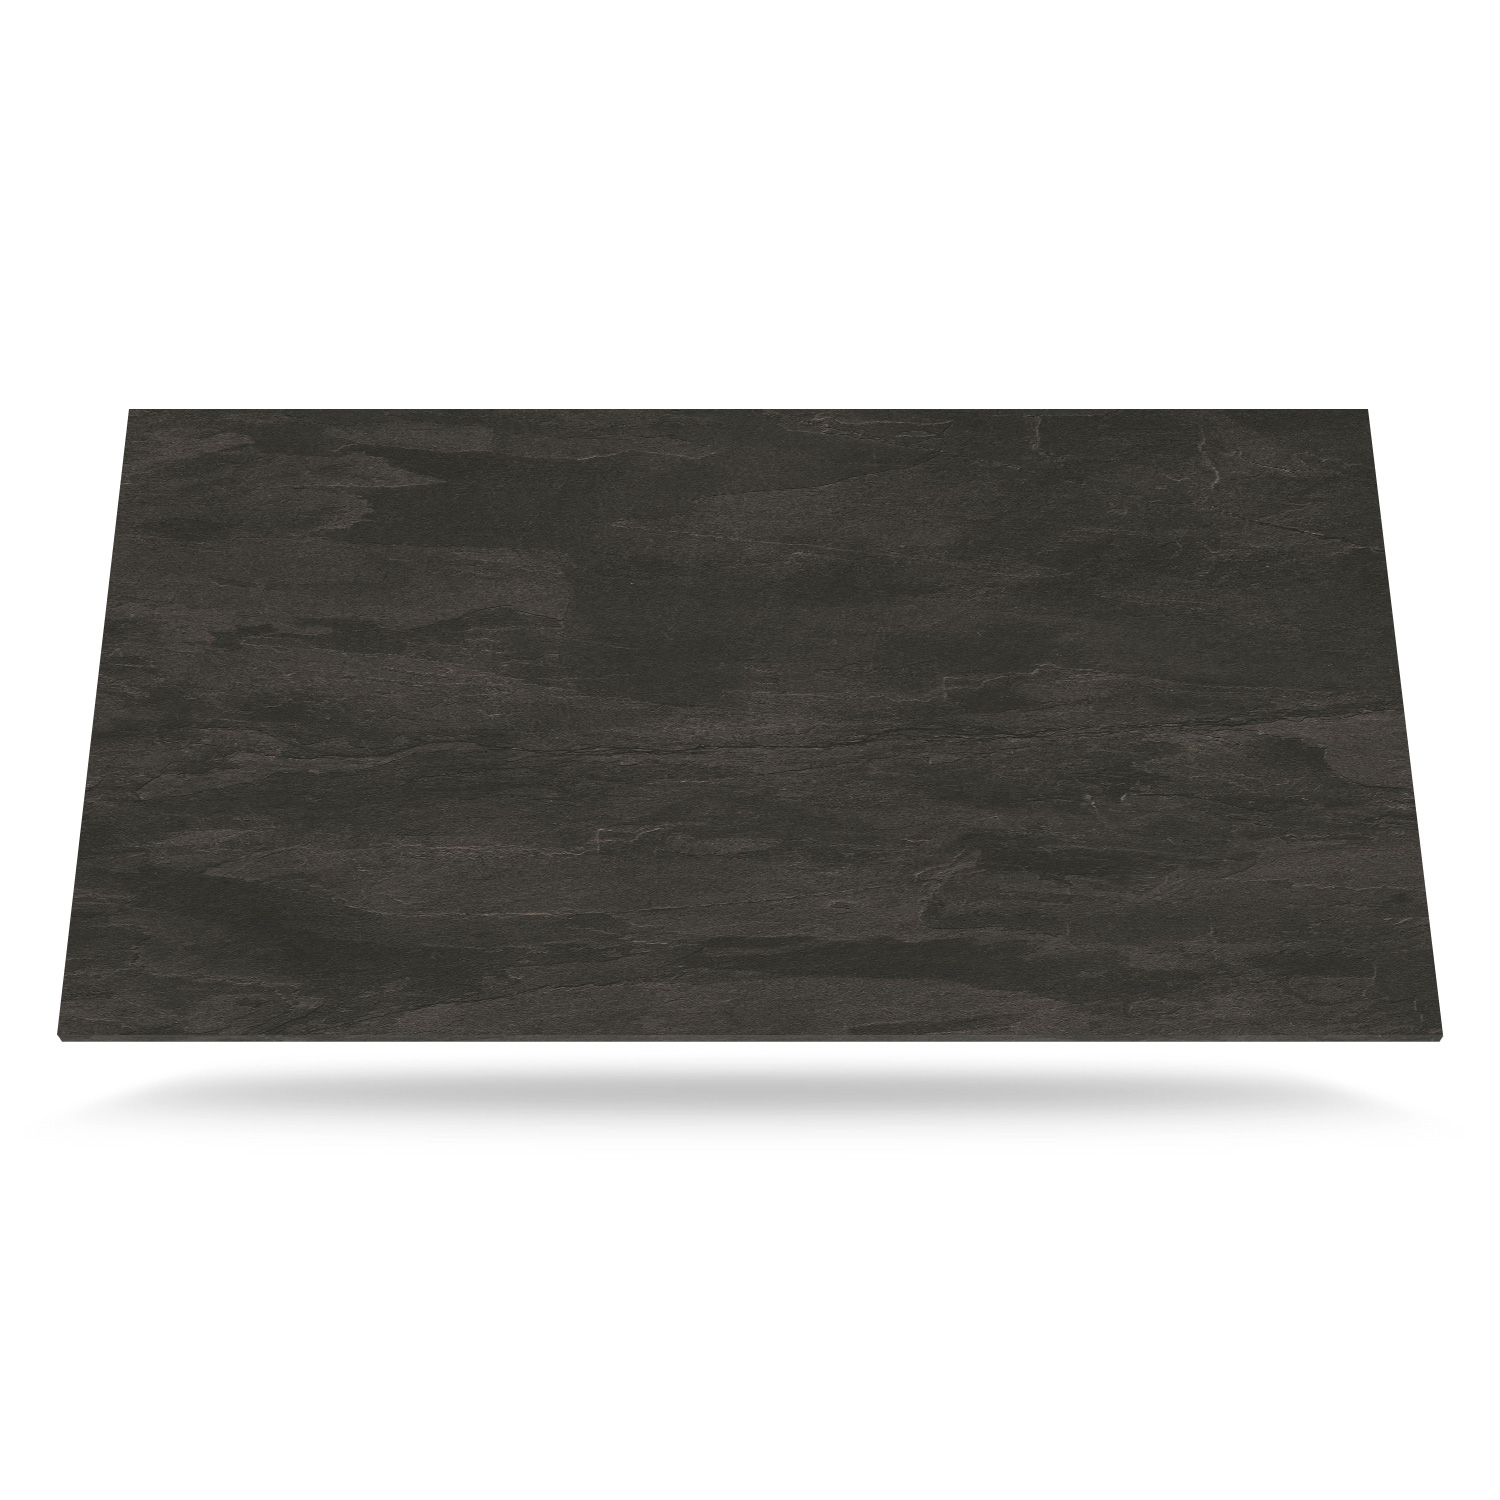 Mørkegrå Farve med skifer tekstur -  Laminat bordplade på mål - BP930